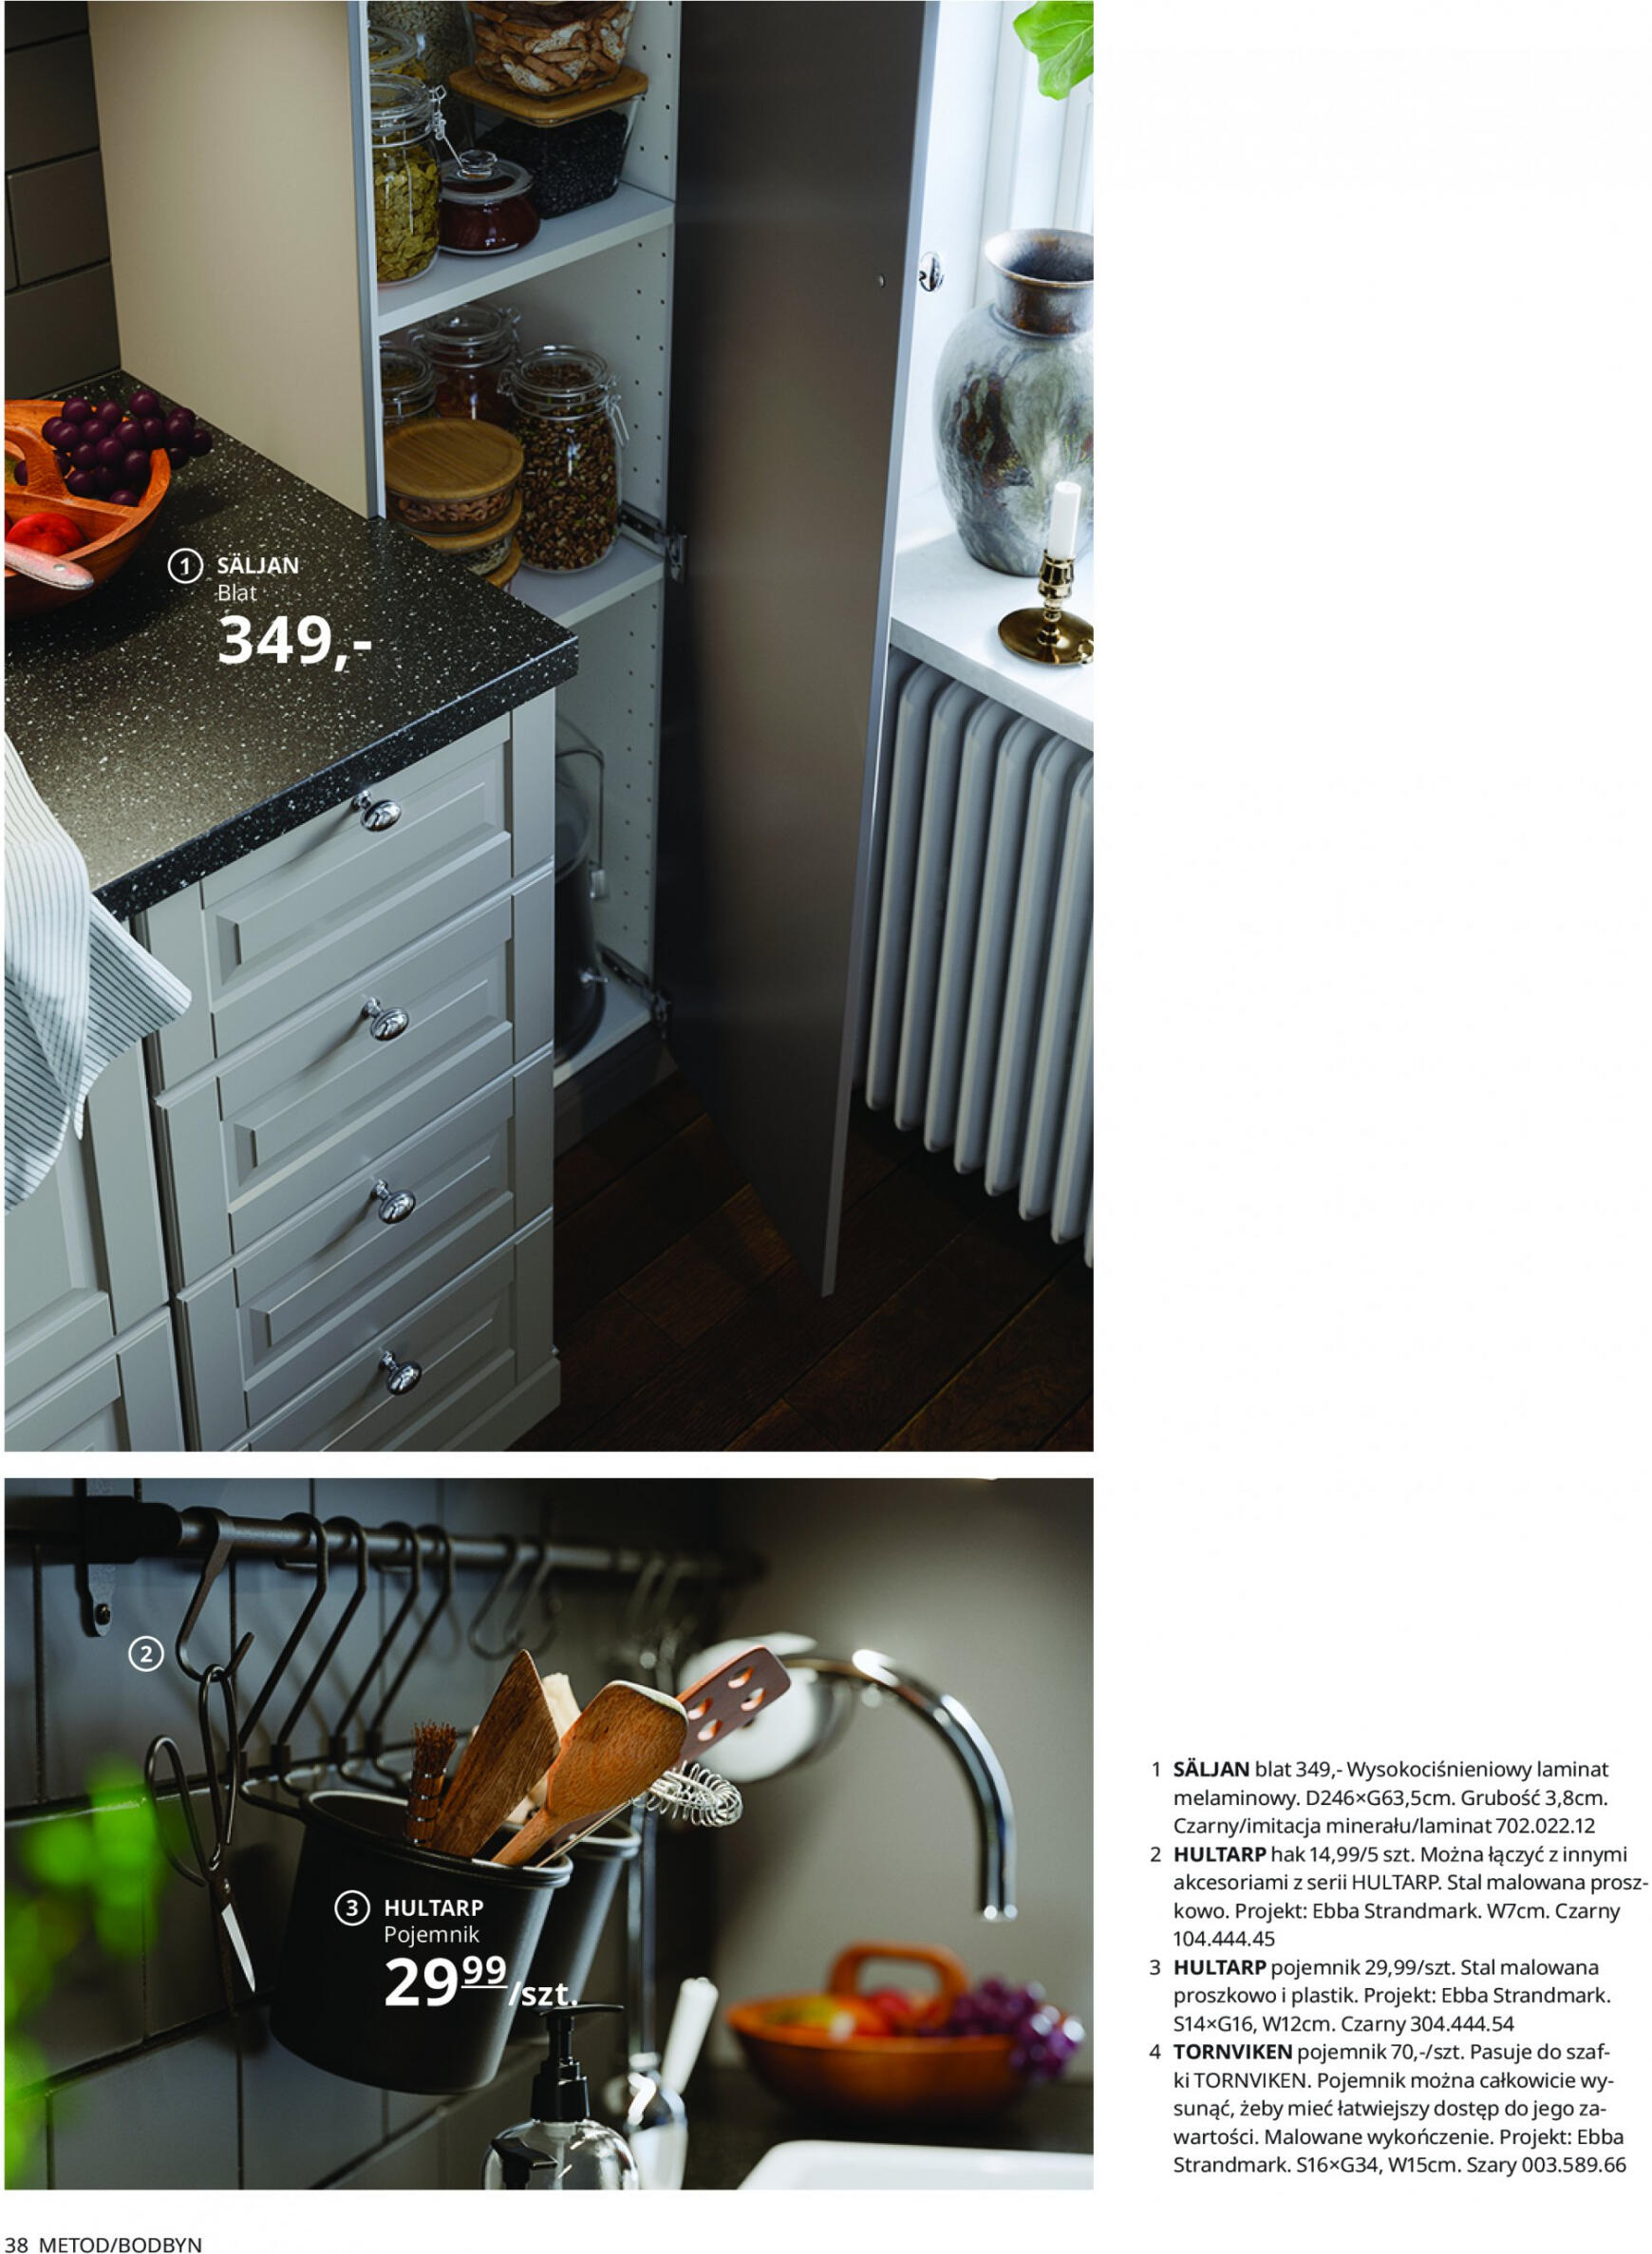 ikea - IKEA - Kuchnie - page: 38